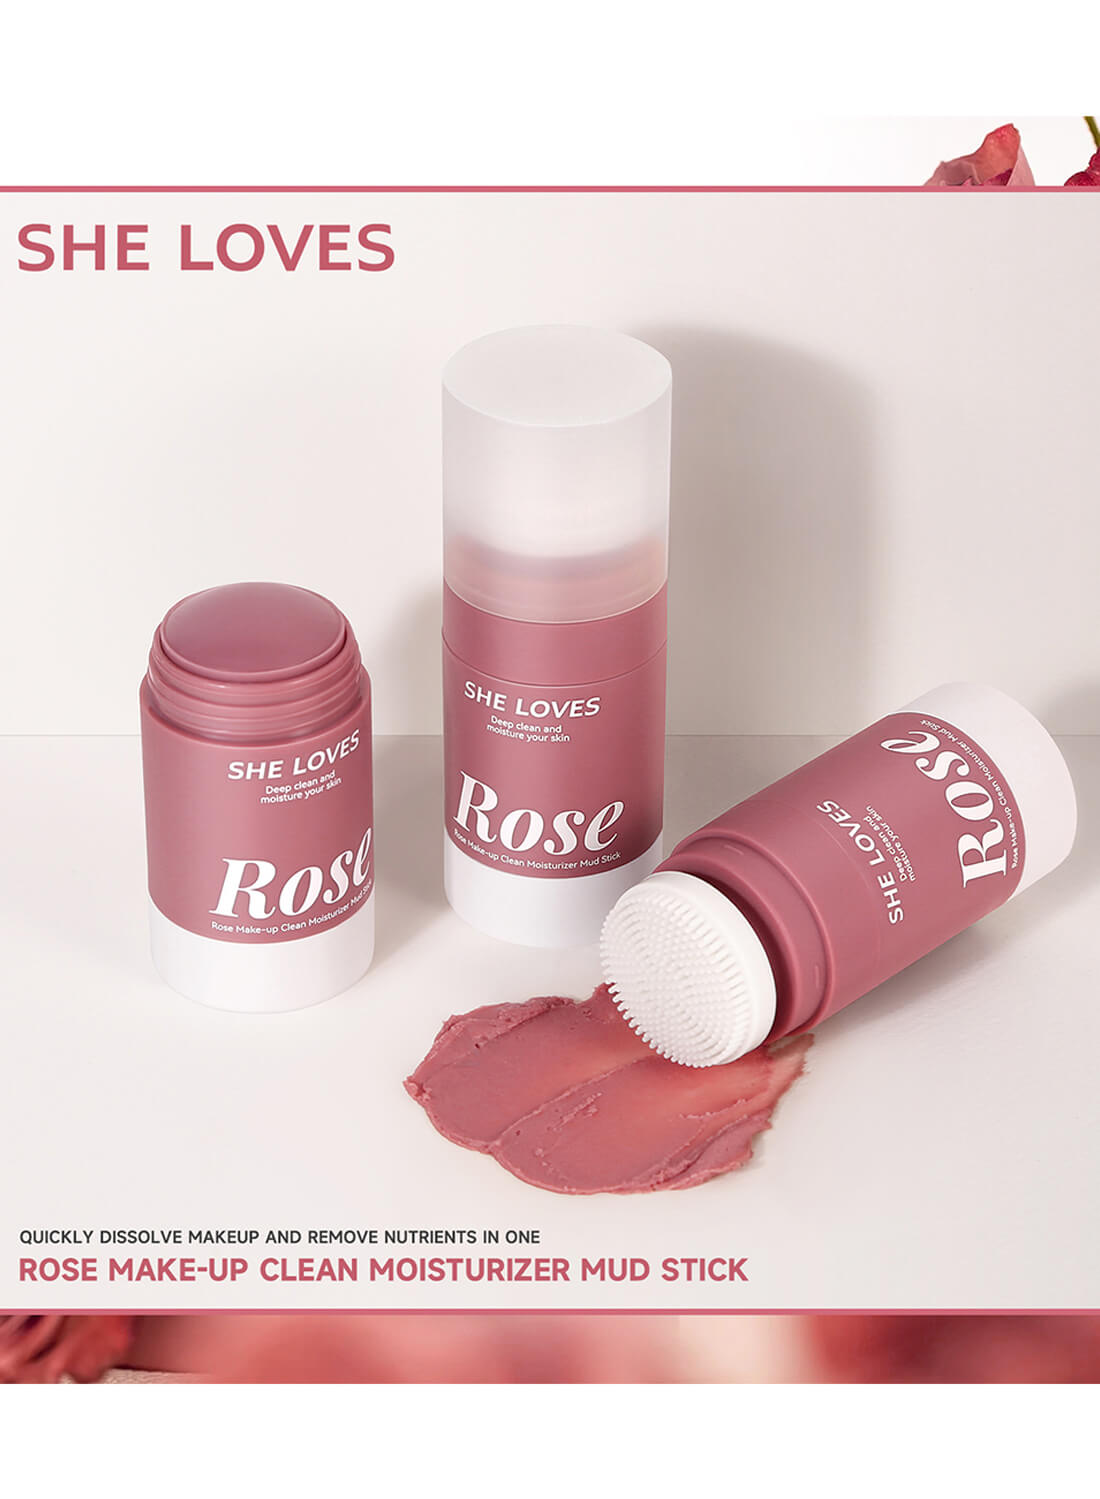 She Loves Rose Makeup Clean Moisturizer Mud Stick